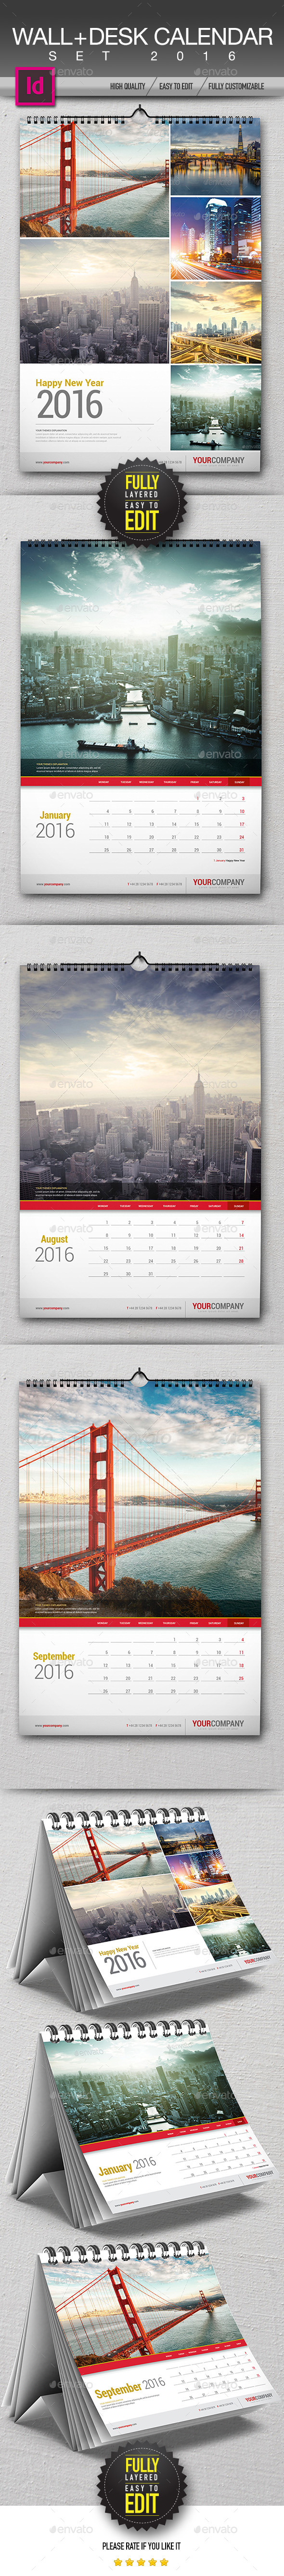 Wall + Desk Calendar 2016